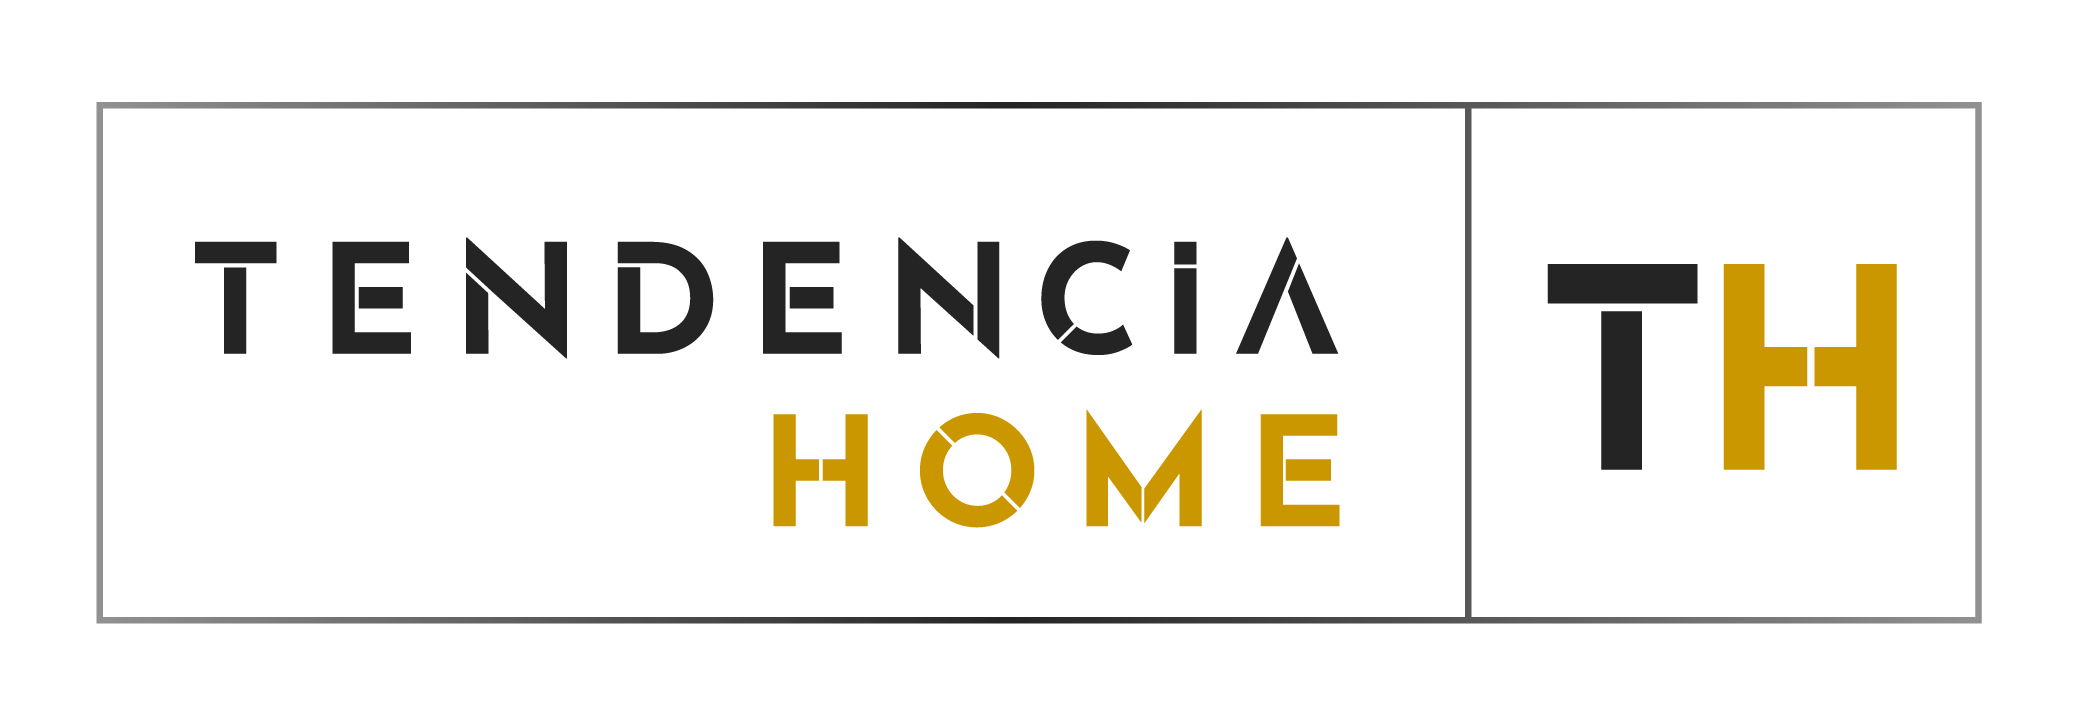 Tendencia Home